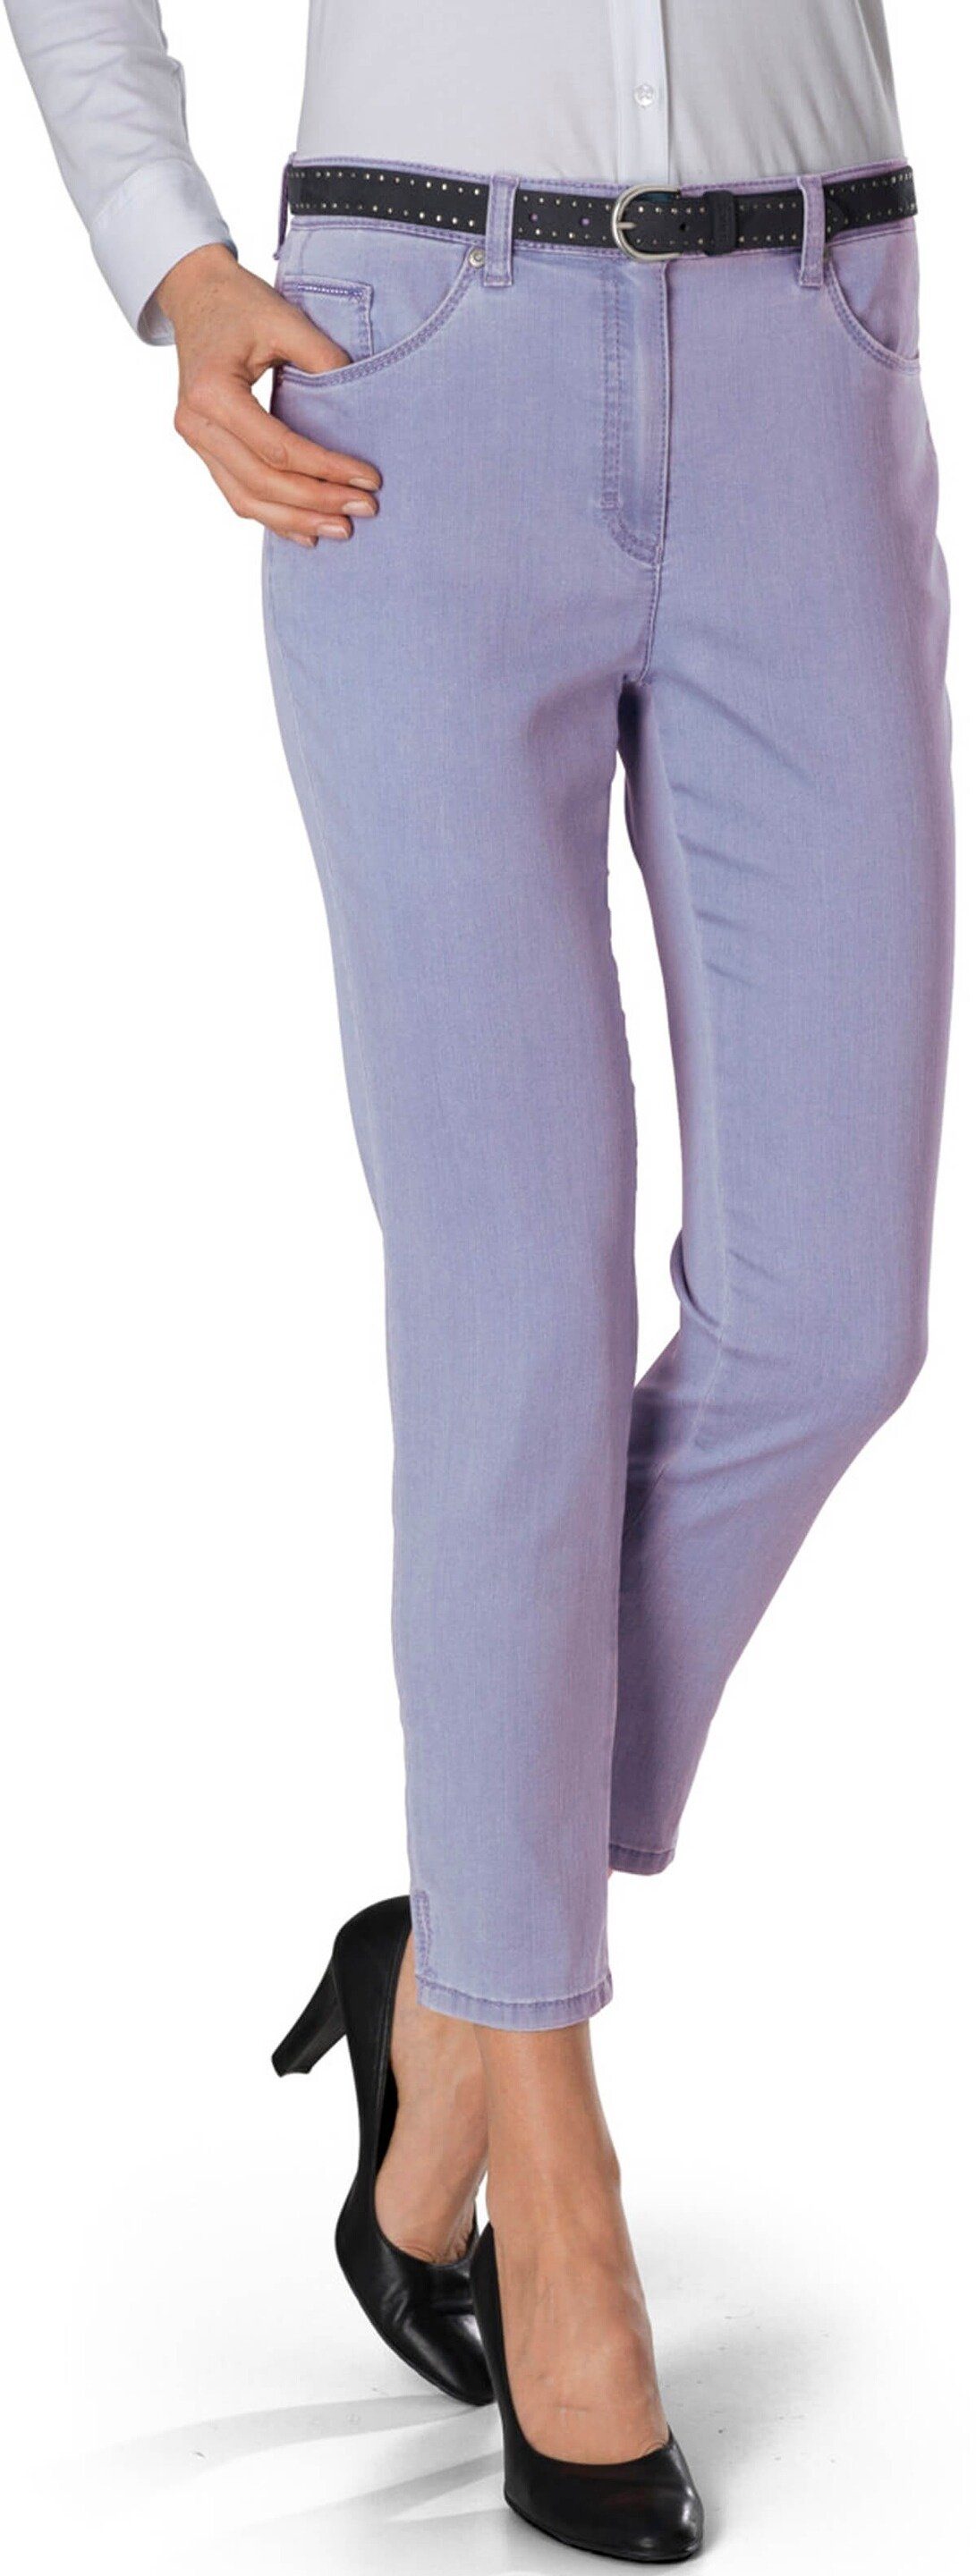 RAPHAELA by BRAX 7/8-Jeans RAPHAELA BY BRAX 7/8 Jeans Lesley flieder 5-Pocket Form